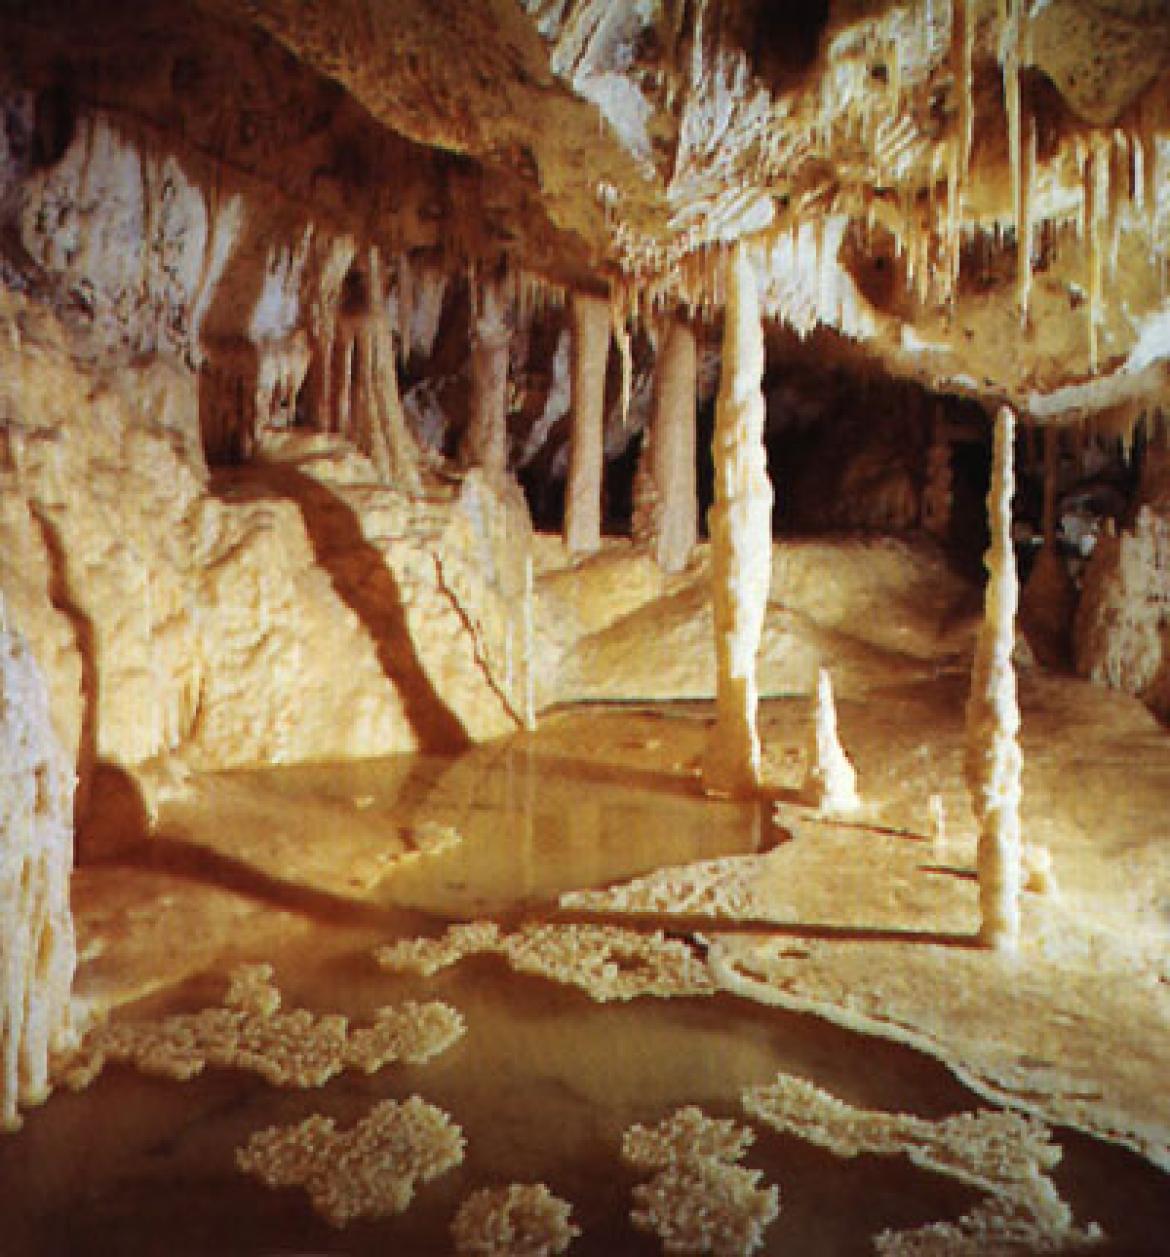 Leggi: Le Grotte di Frasassi